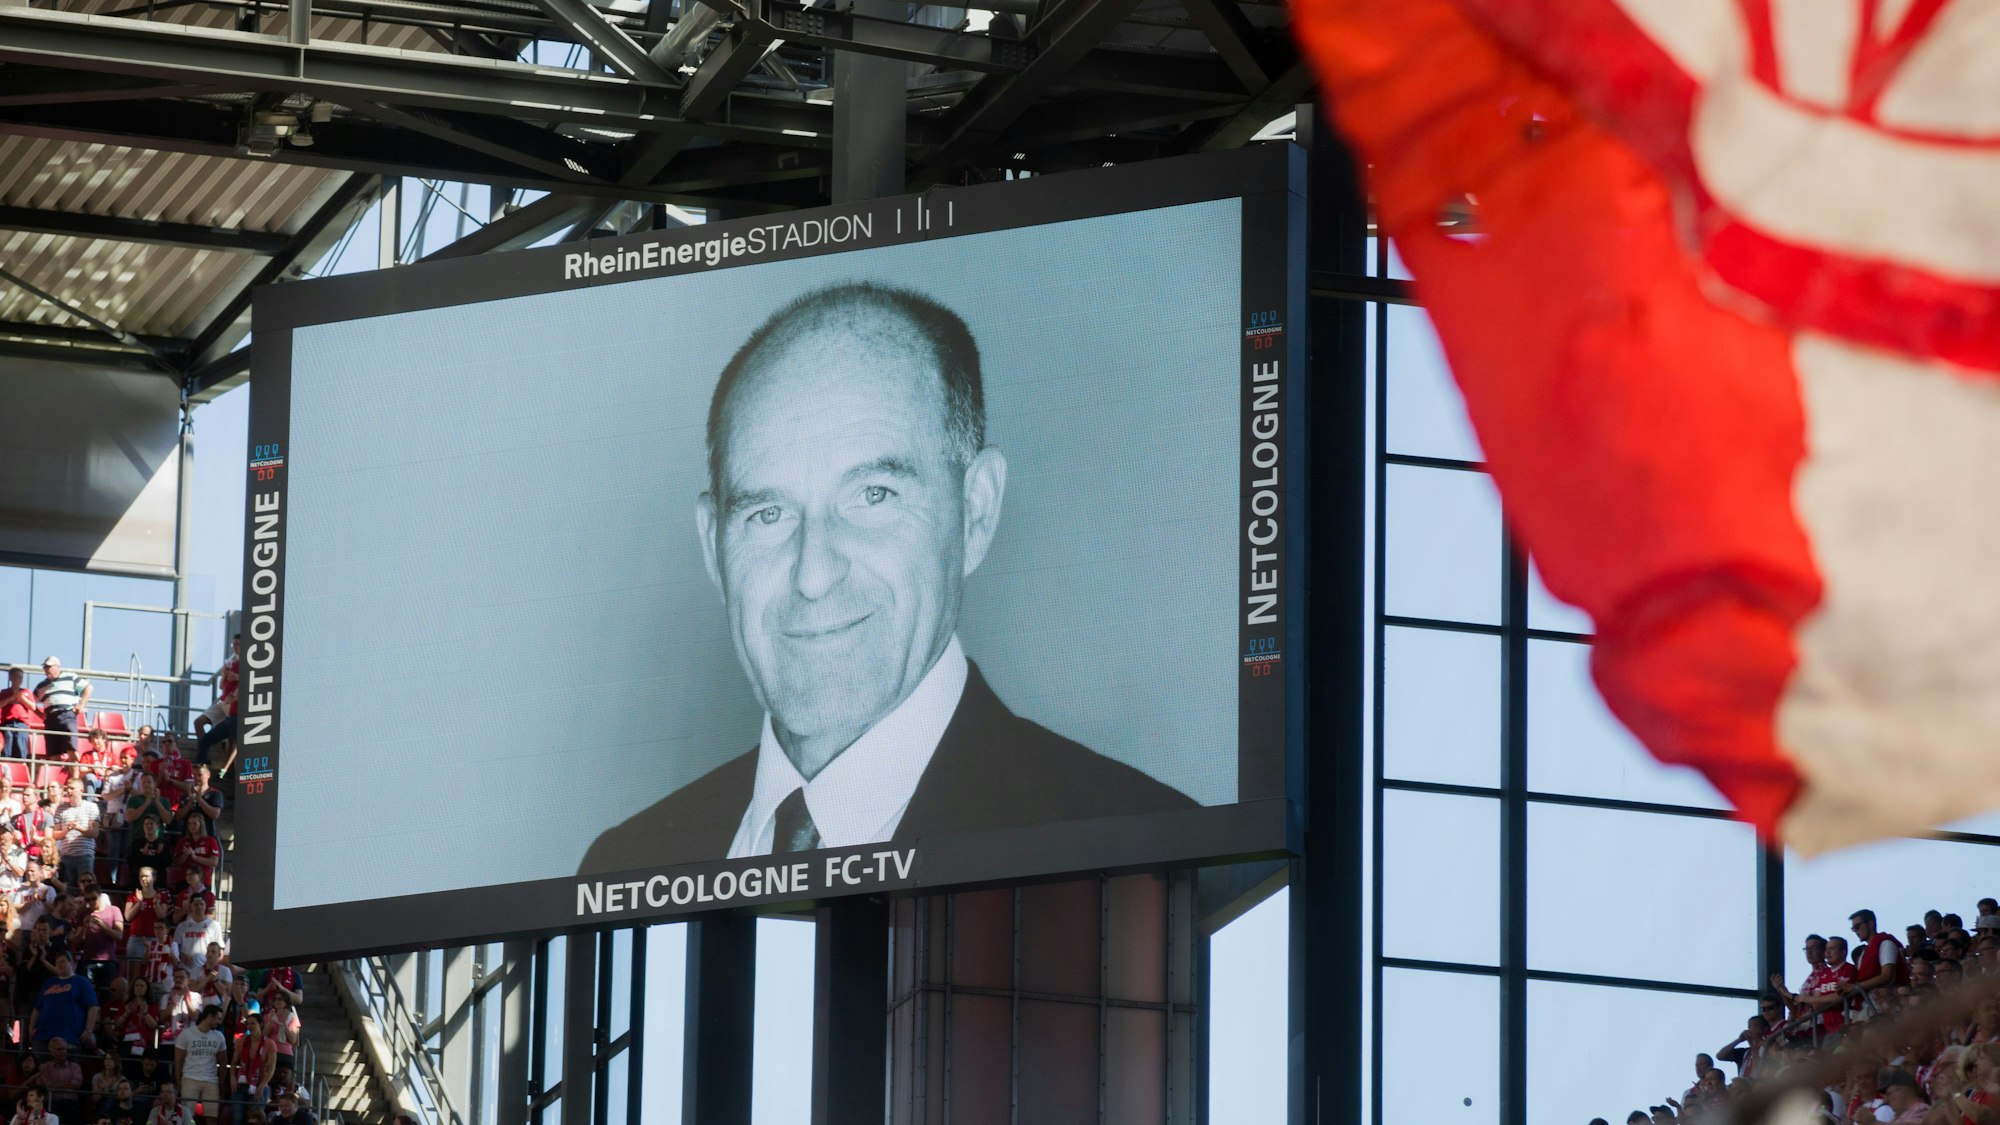 Bild von Karl-Erivan Haub auf einer Anzeigetafel im Kölner Rhein-Energie-Stadion.